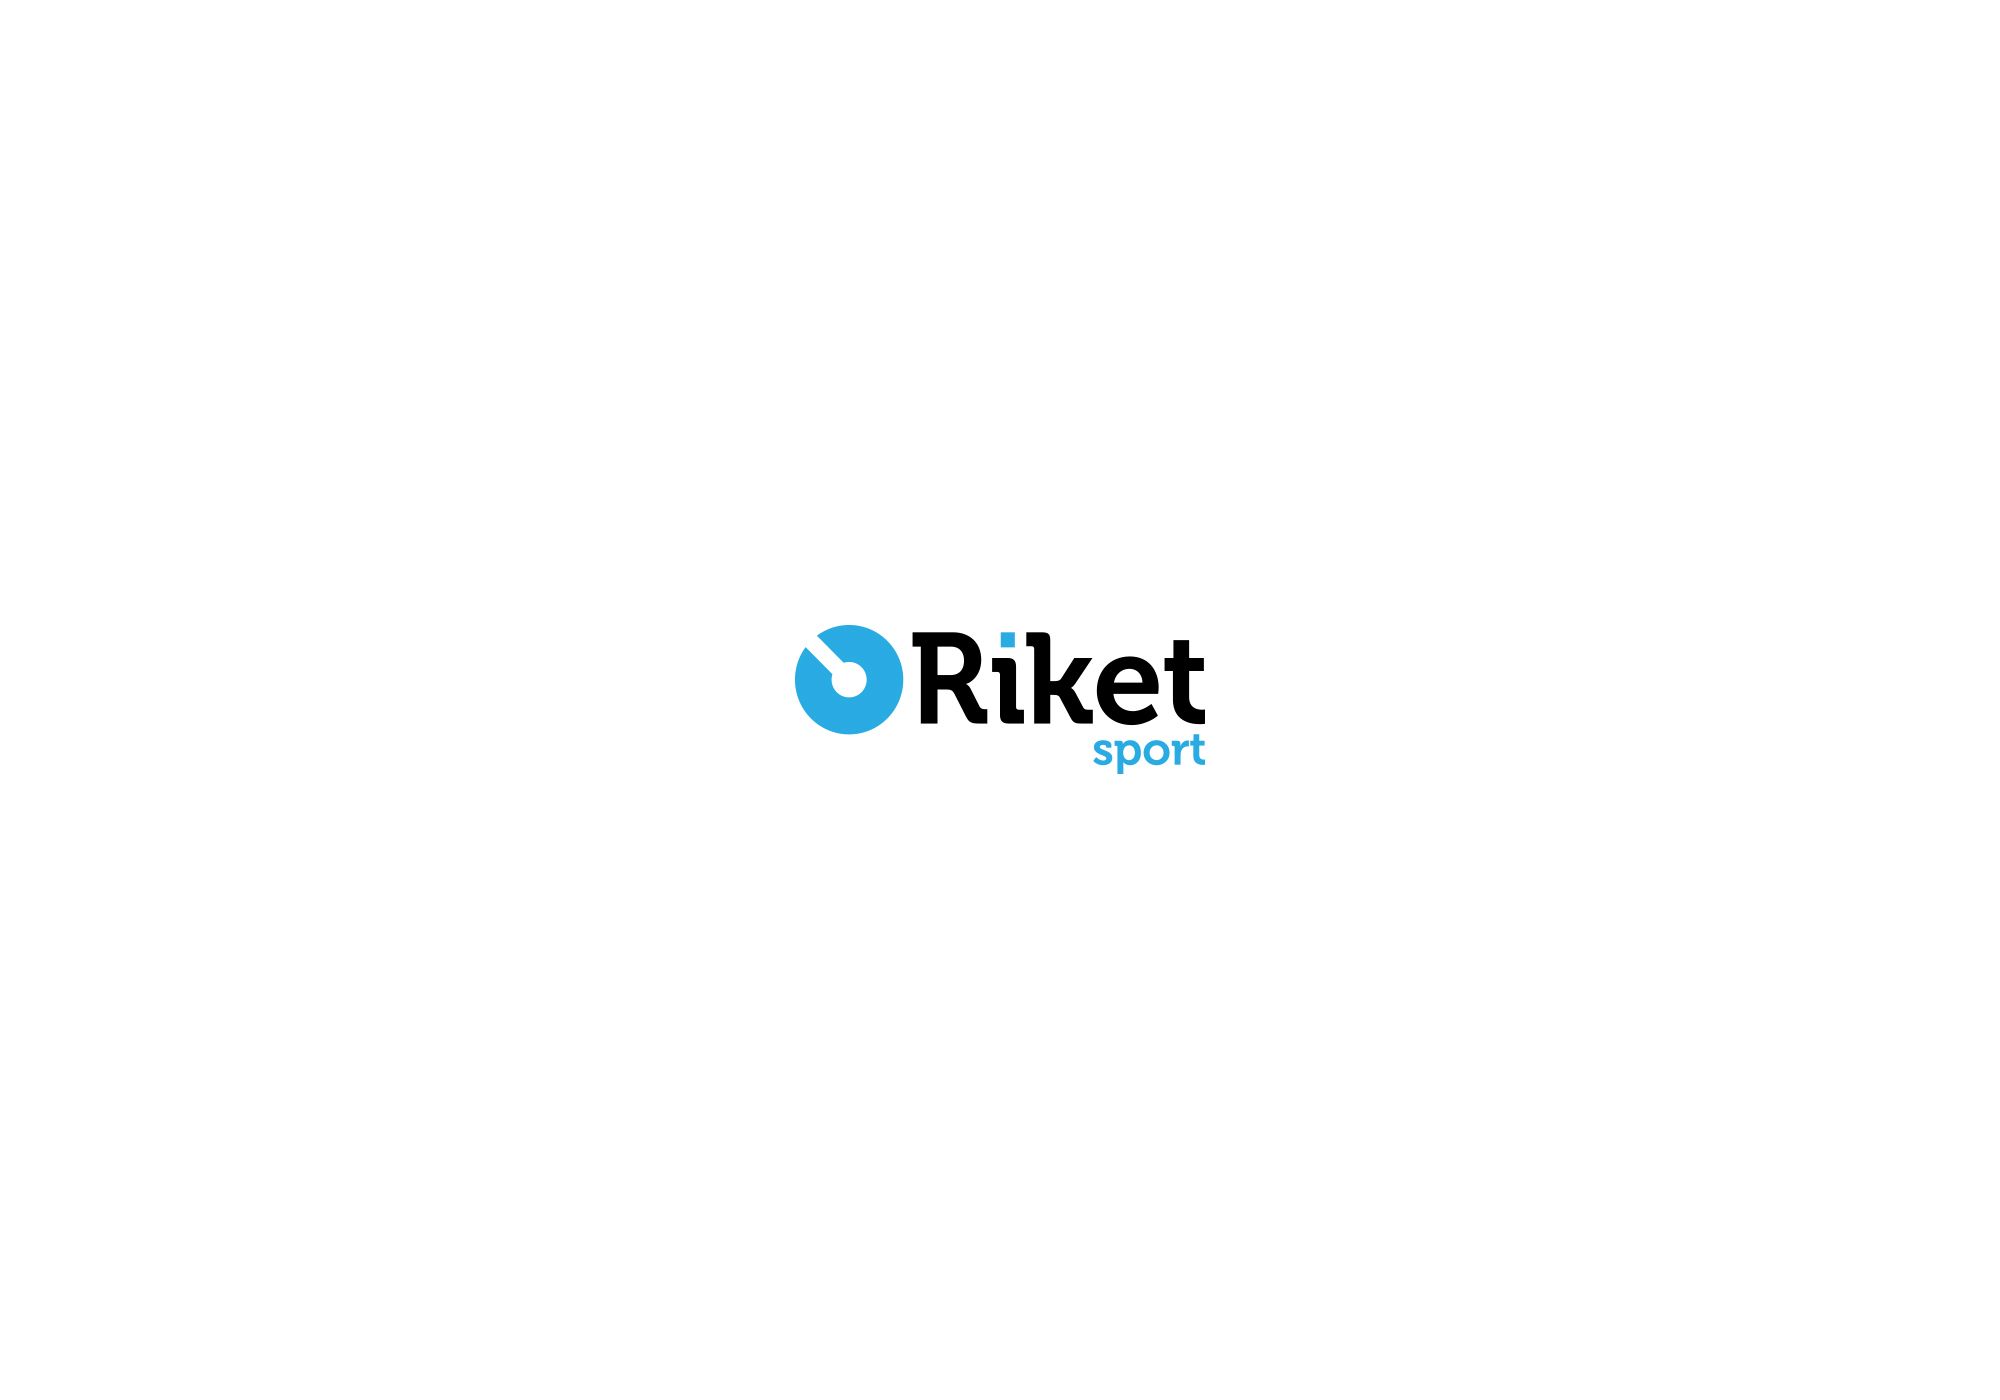 Логотип для Riket, riketsport, rikettravel - дизайнер Ninpo